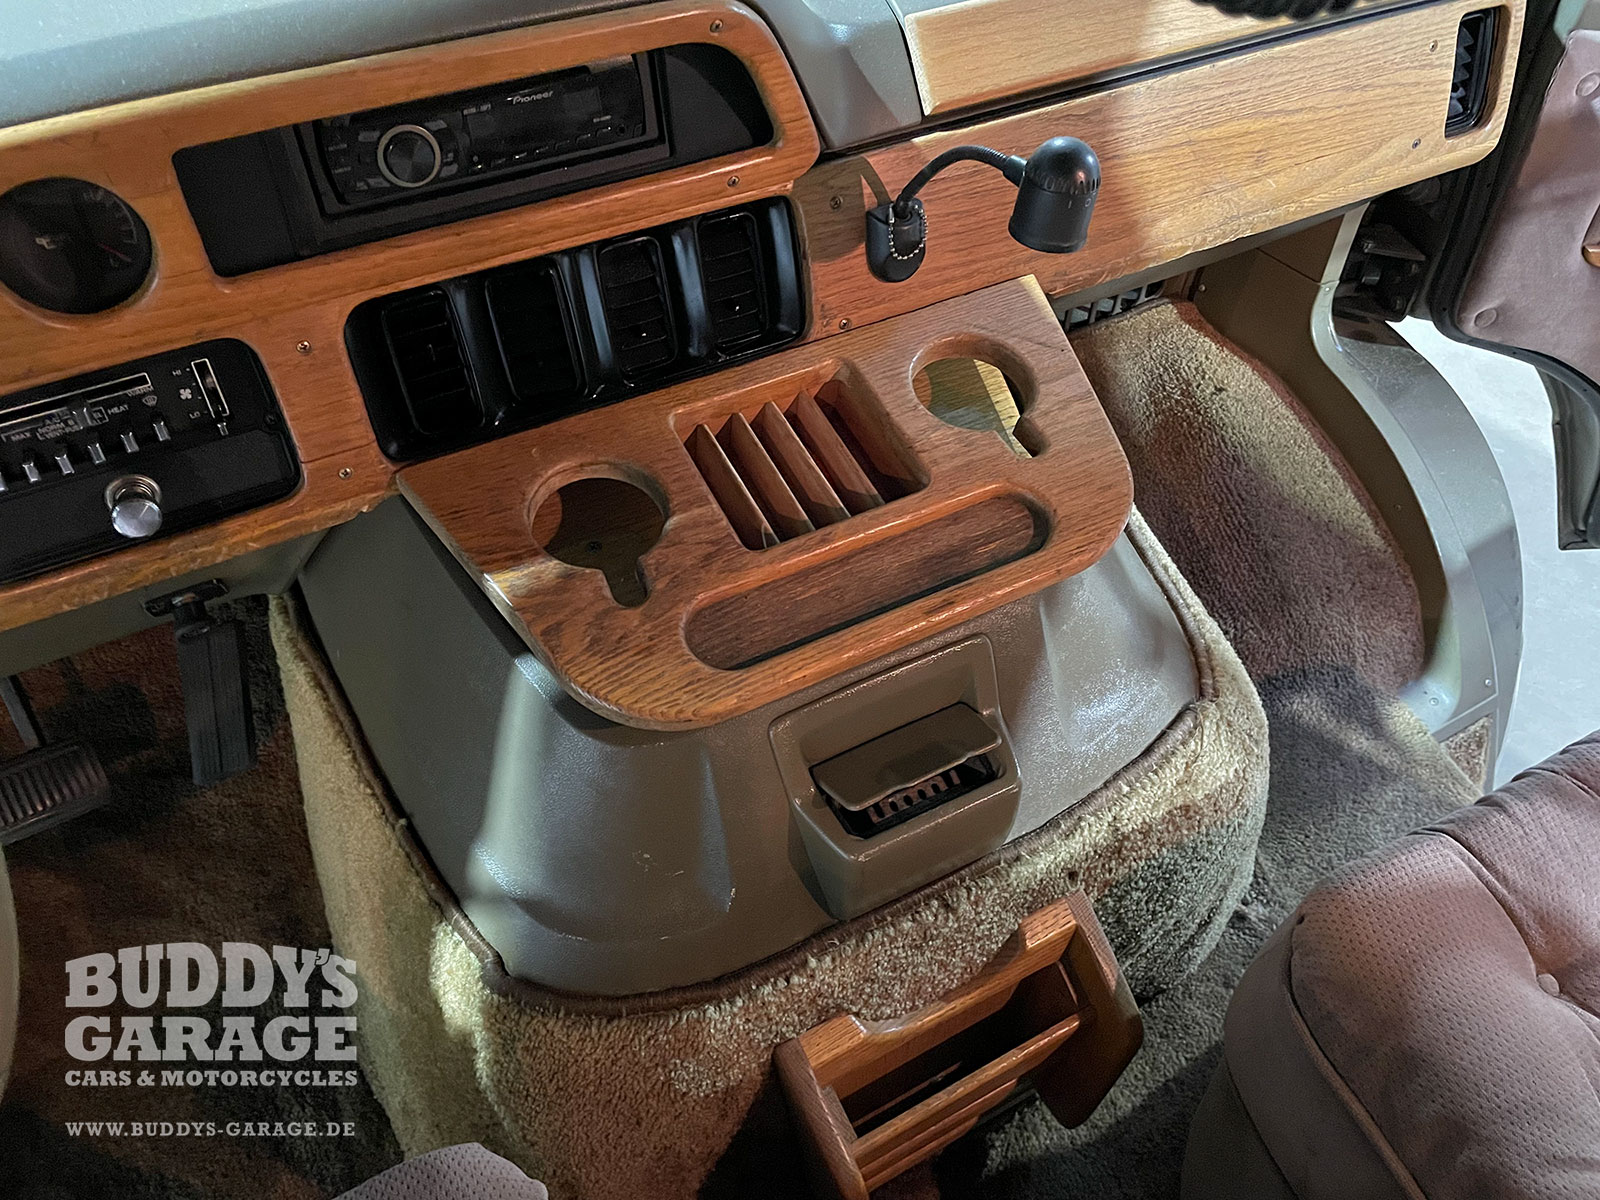 Dodge Ram Starcraft Conversion Van 1990 | Buddy's Garage Bad Oeynhausen